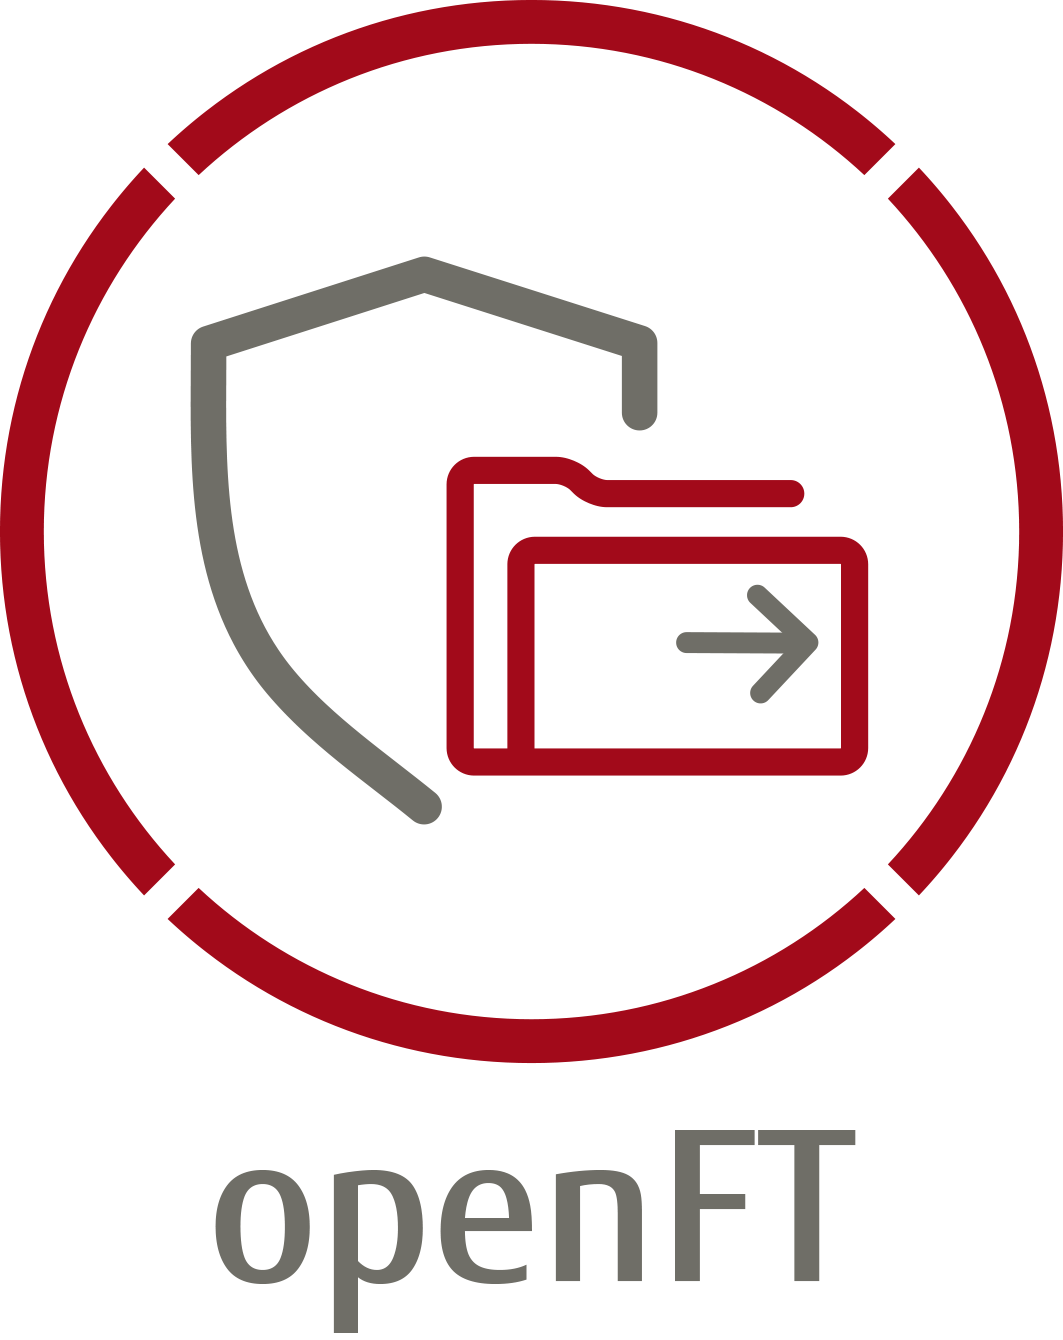 openFT Logo: Ein Kreis indem ein Schild und ein Ornder mit einem Pfeil drauf ist. Unterschrift openFT.